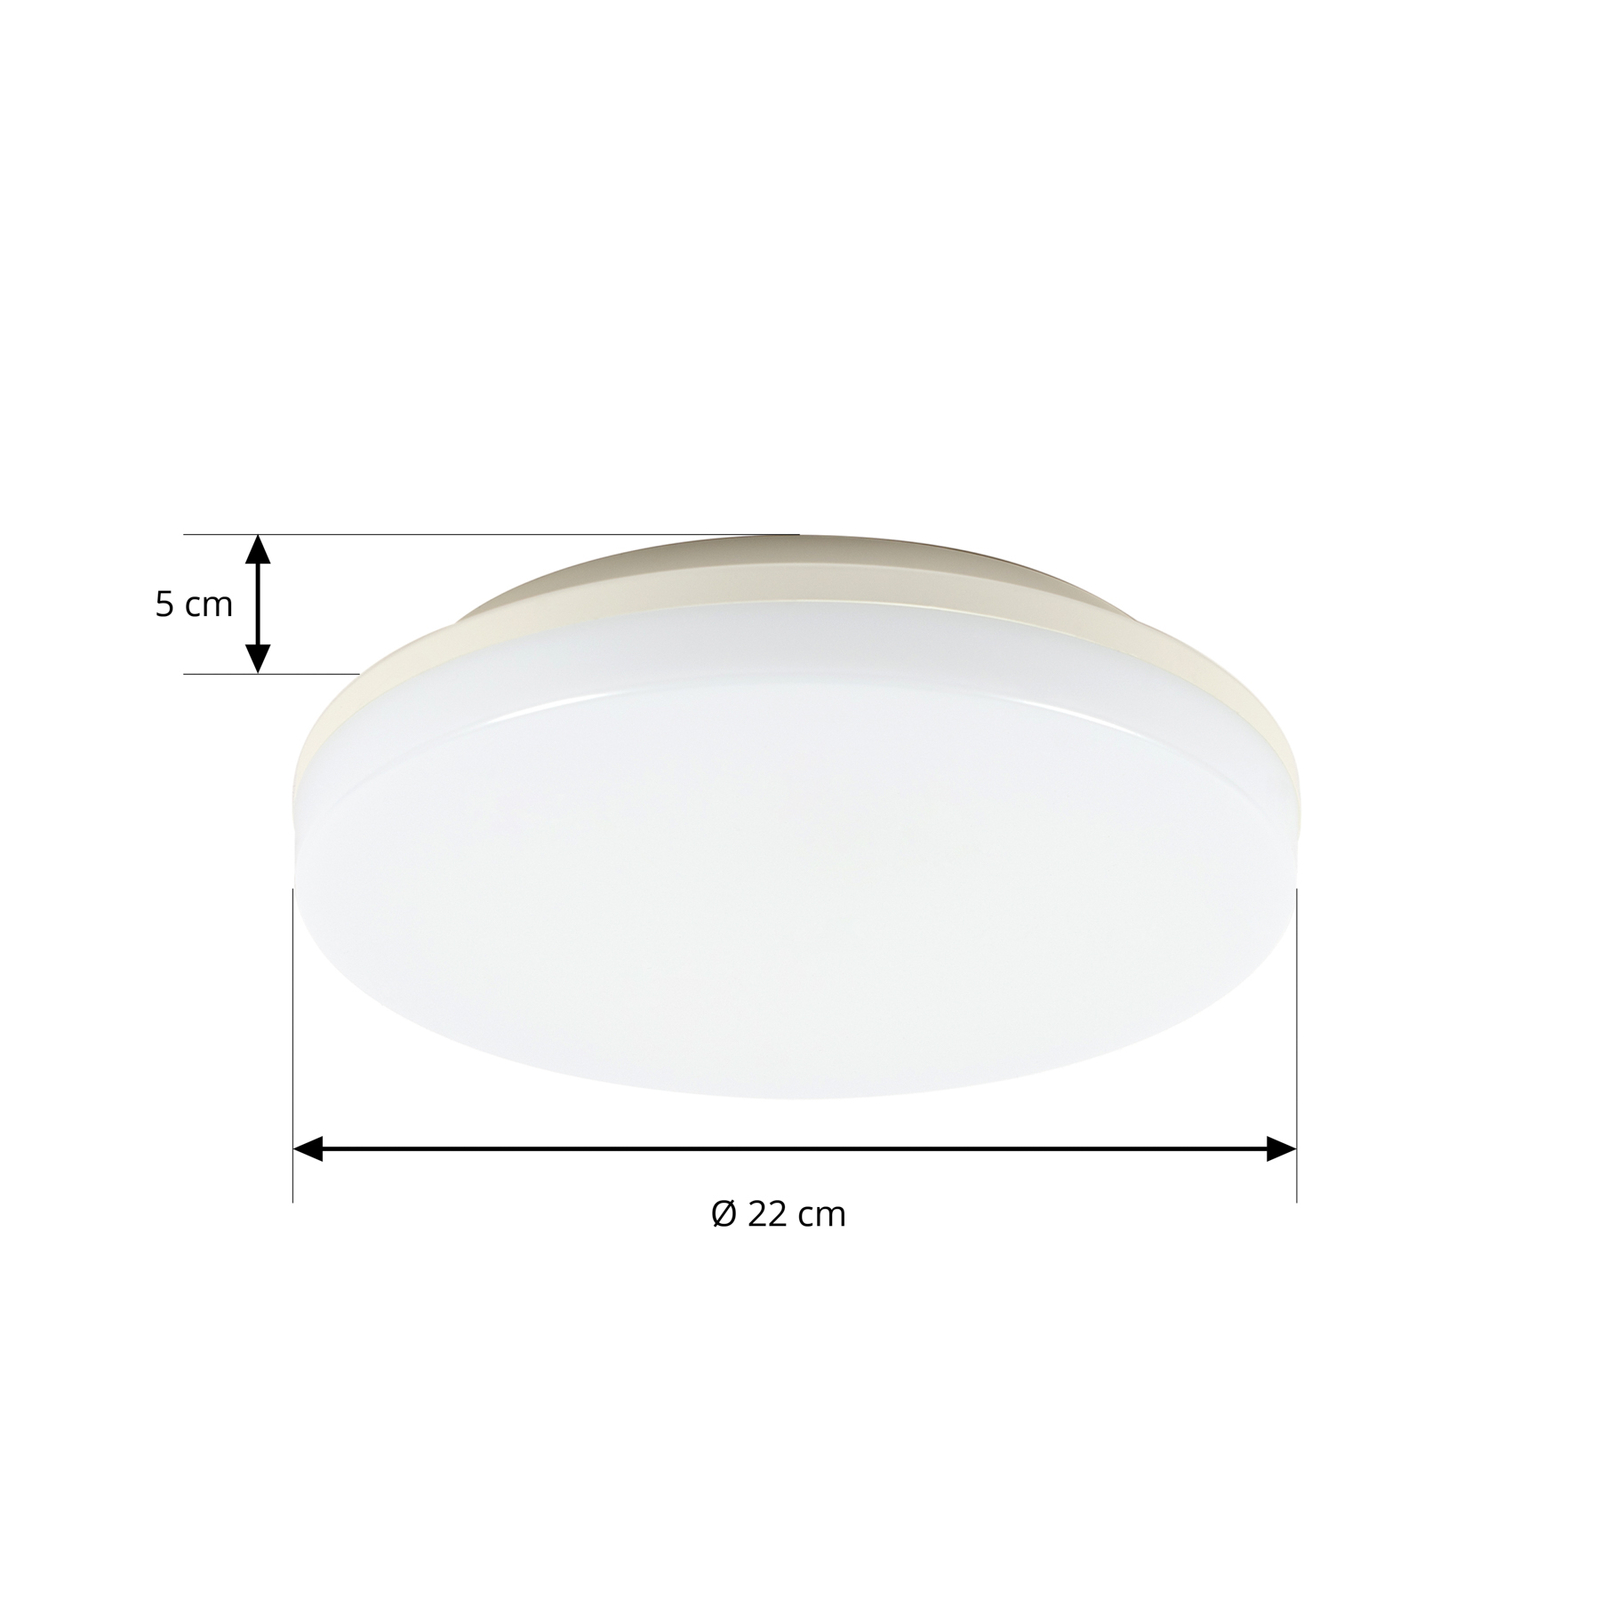 Prios Artin LED plafondlamp, sensor, rond, 22 cm